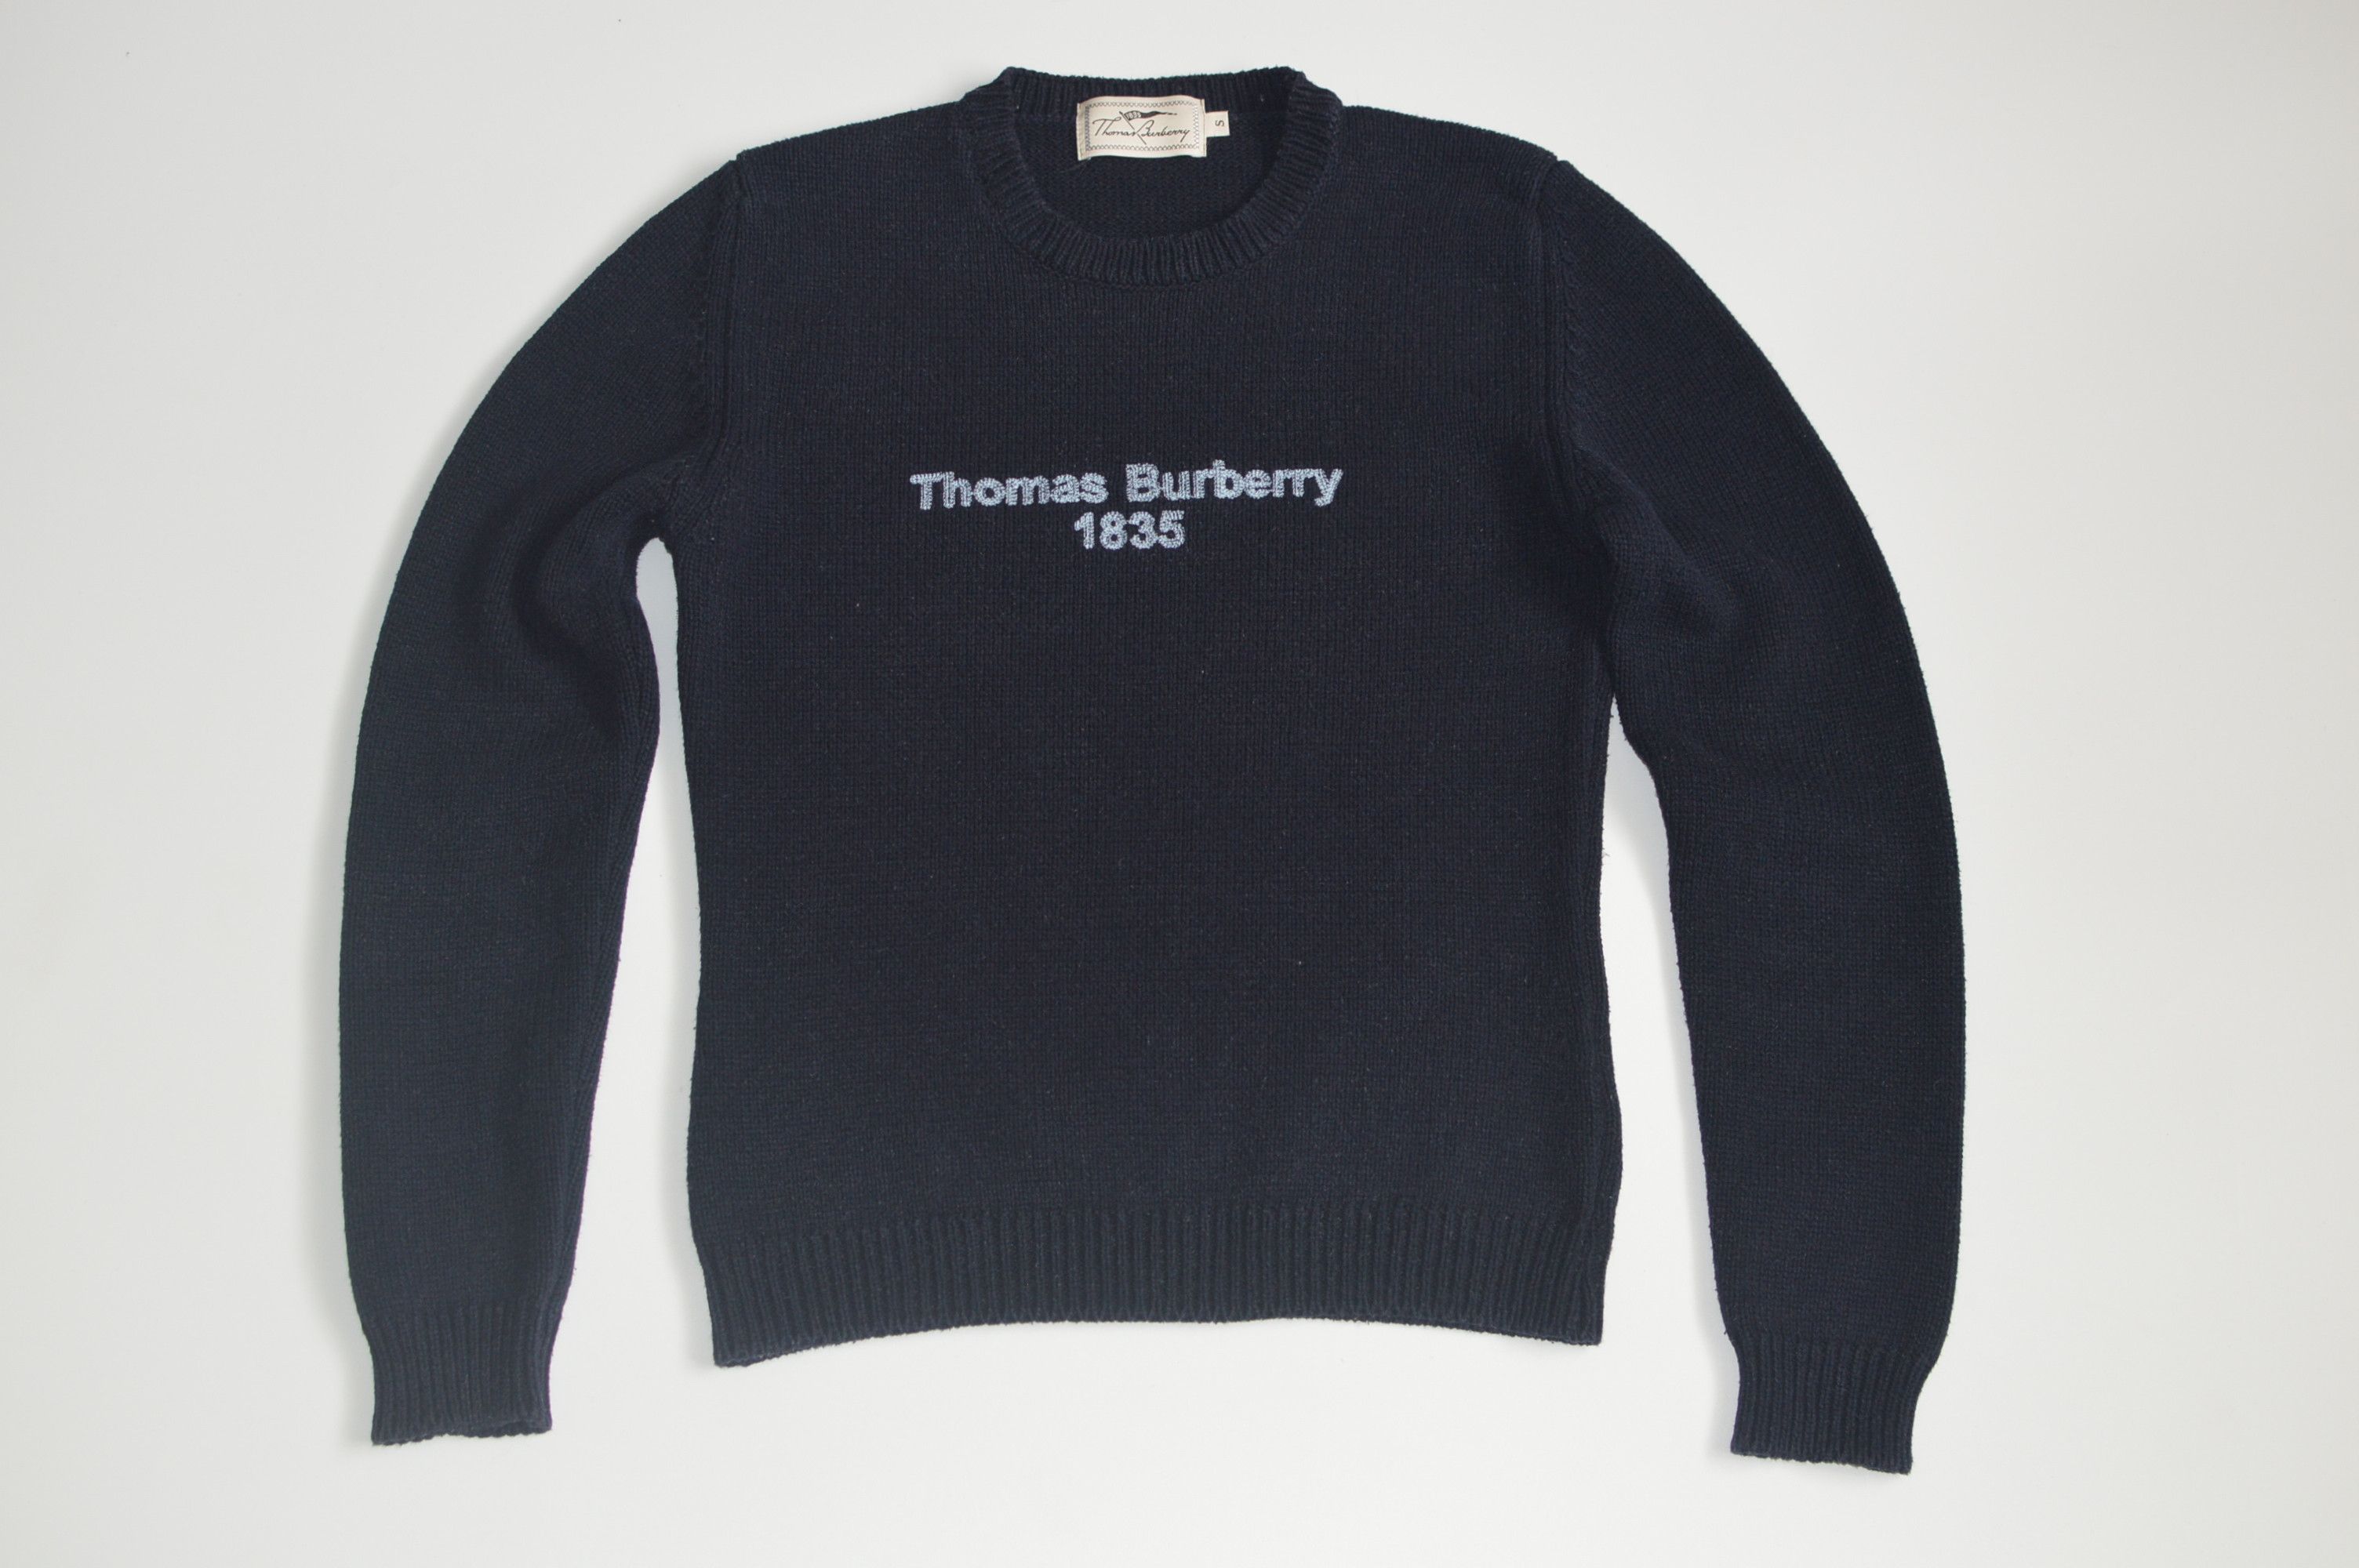 Vintage Vintage Thomas Burberry 1835 Sweater Wmns Size US S / EU 44-46 / 1 - 1 Preview